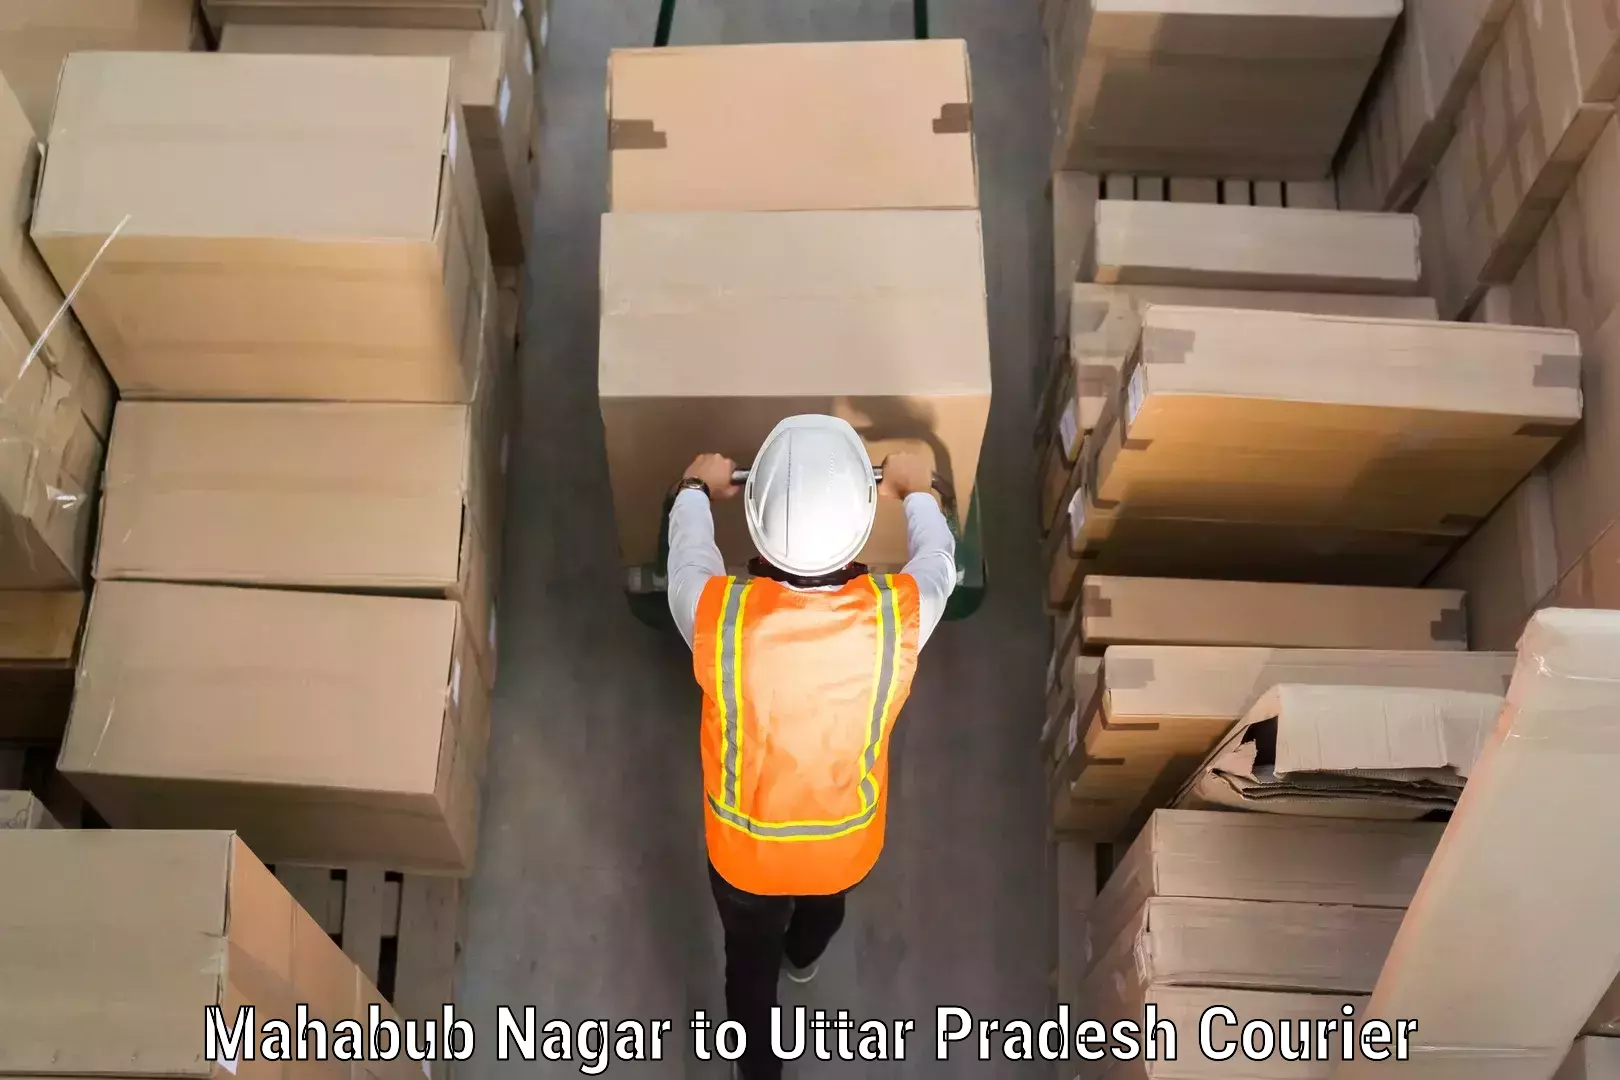 Baggage courier solutions Mahabub Nagar to Varanasi